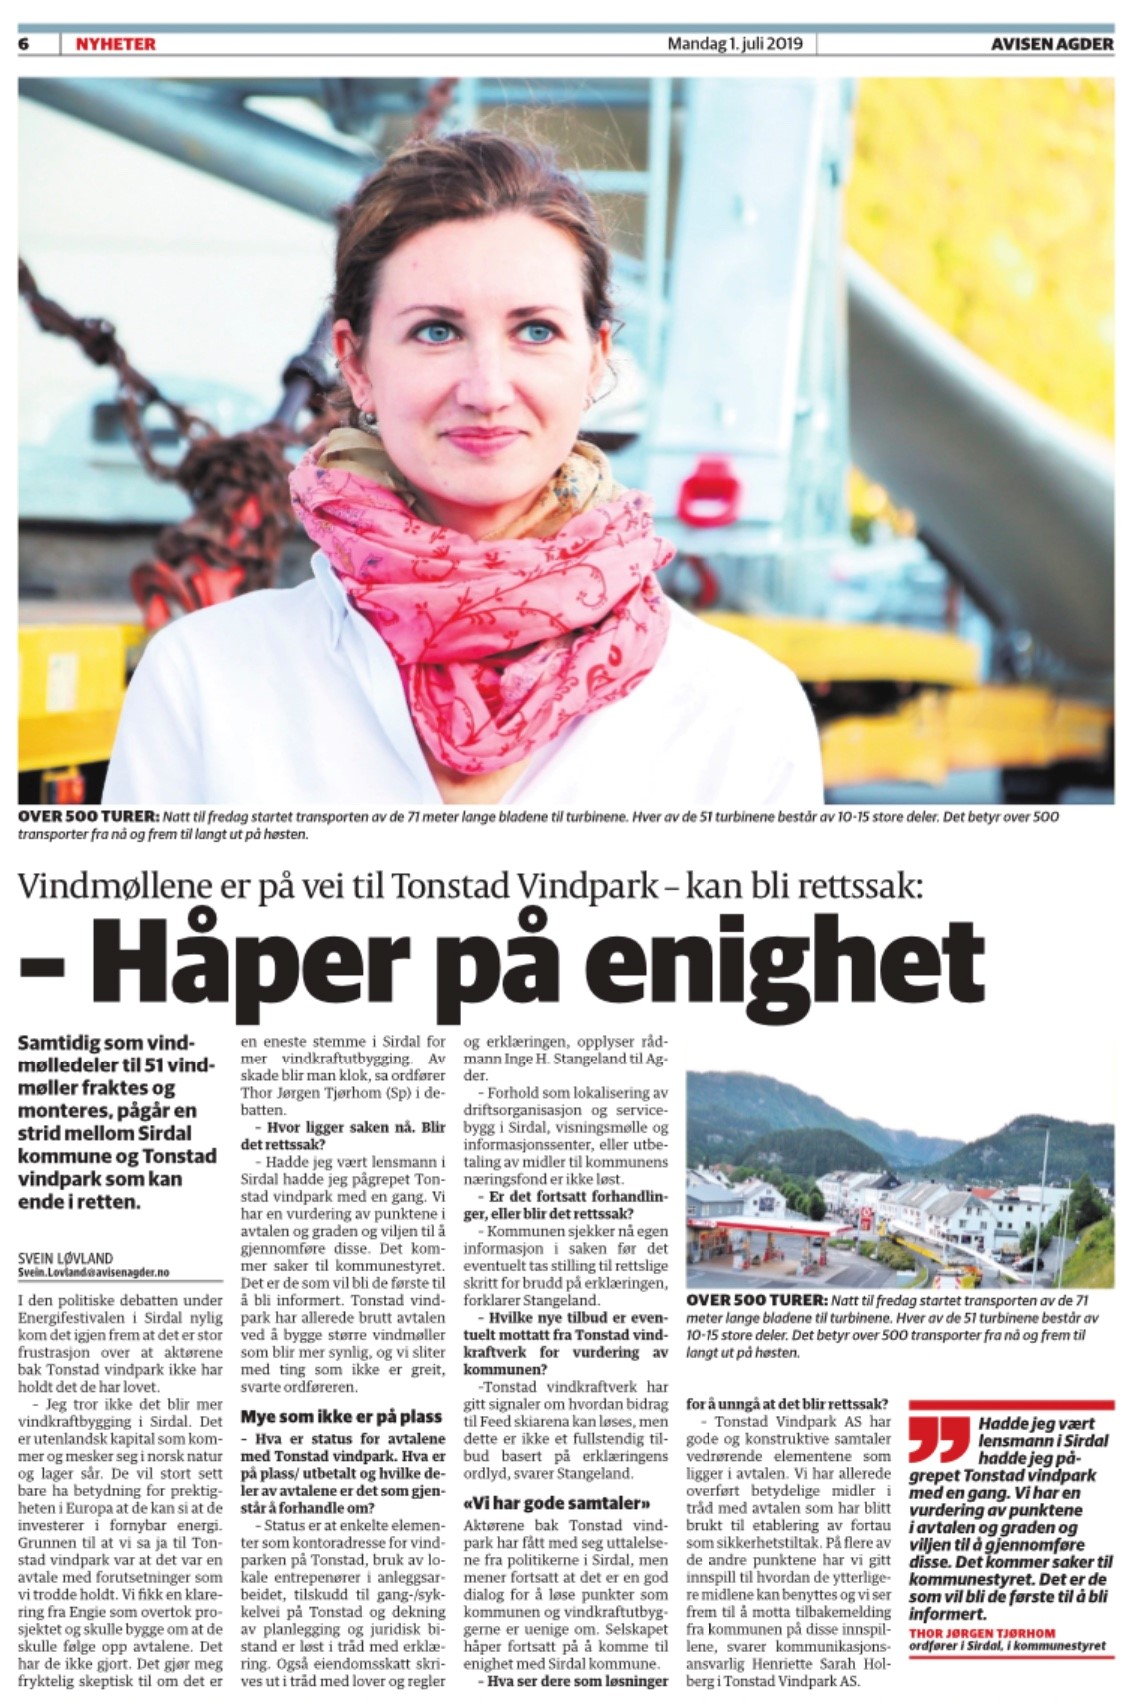 Henriette Sarah Holberg orienterte om anleggsstatus for Tonstad Vindpark